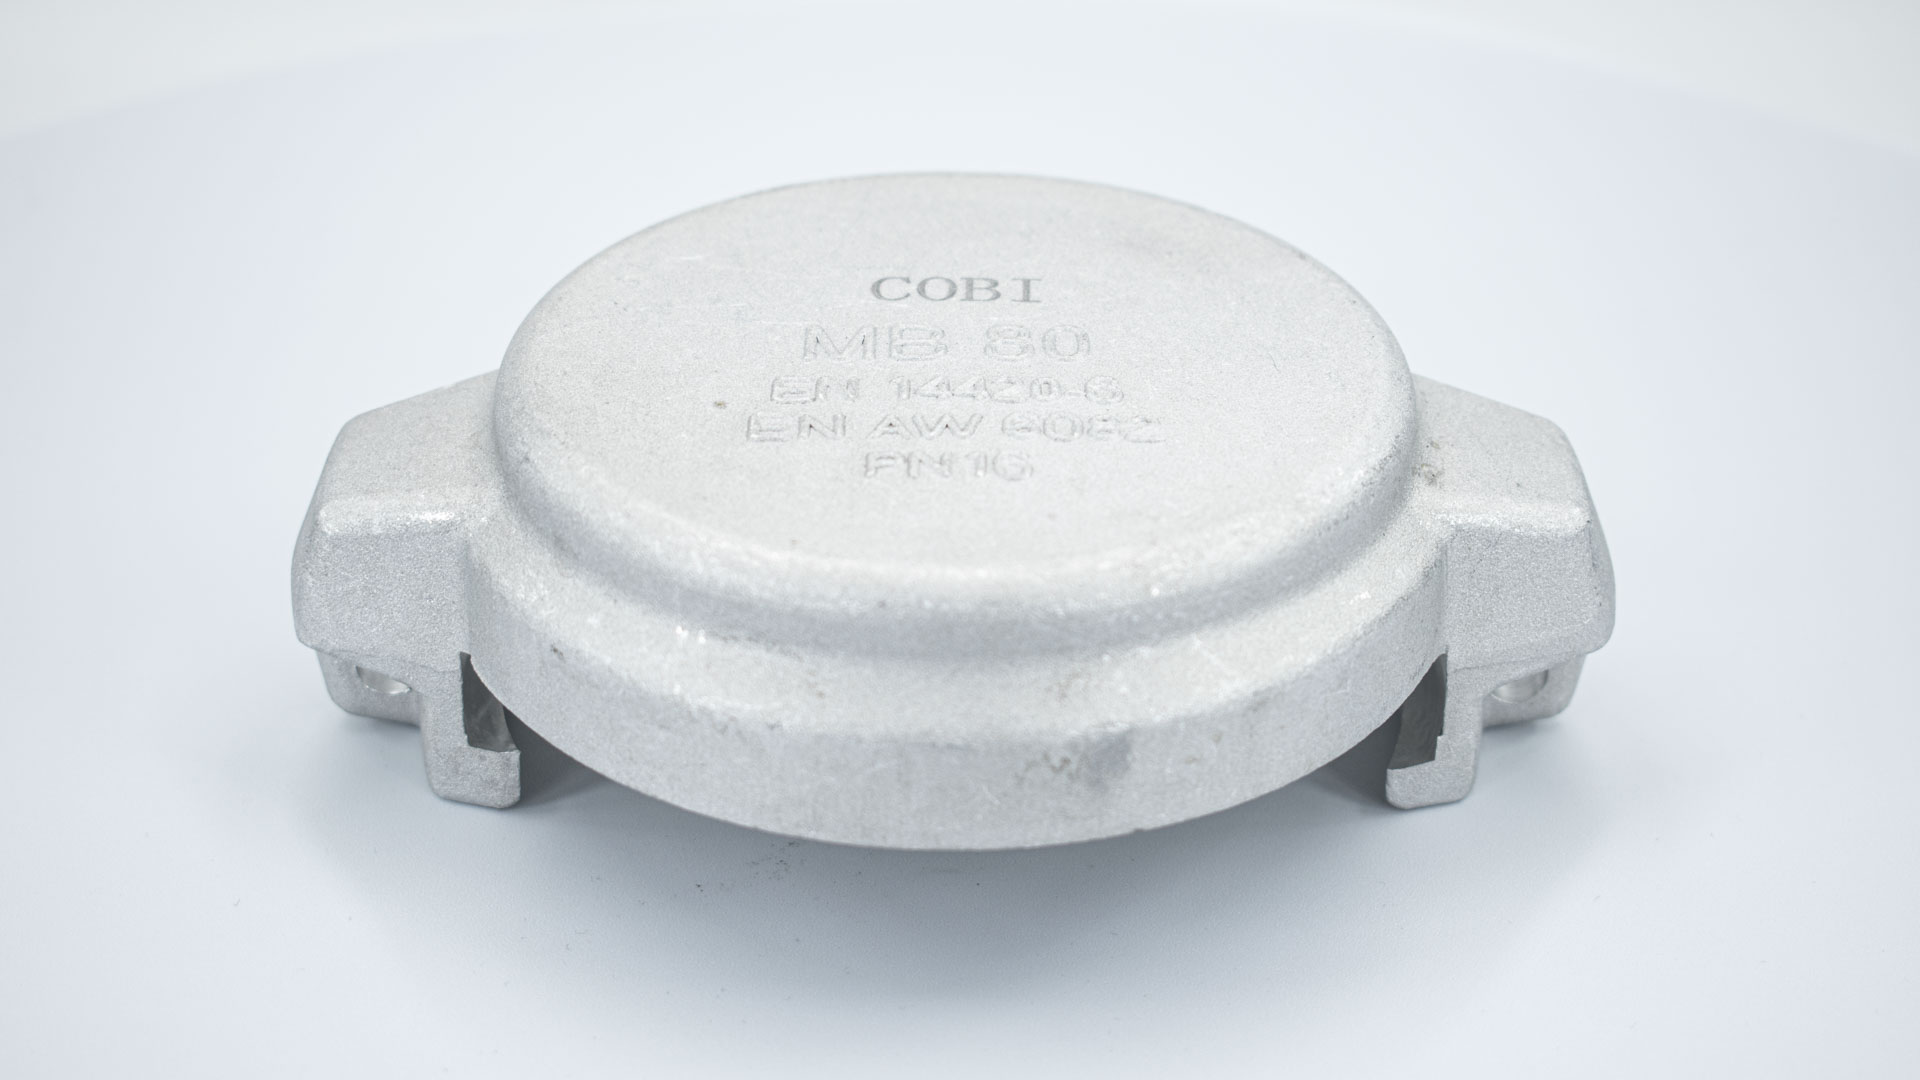 Zaślepka wykonane z aluminium zgodnie z normą DIN EN 14420-6 (DIN 28450)